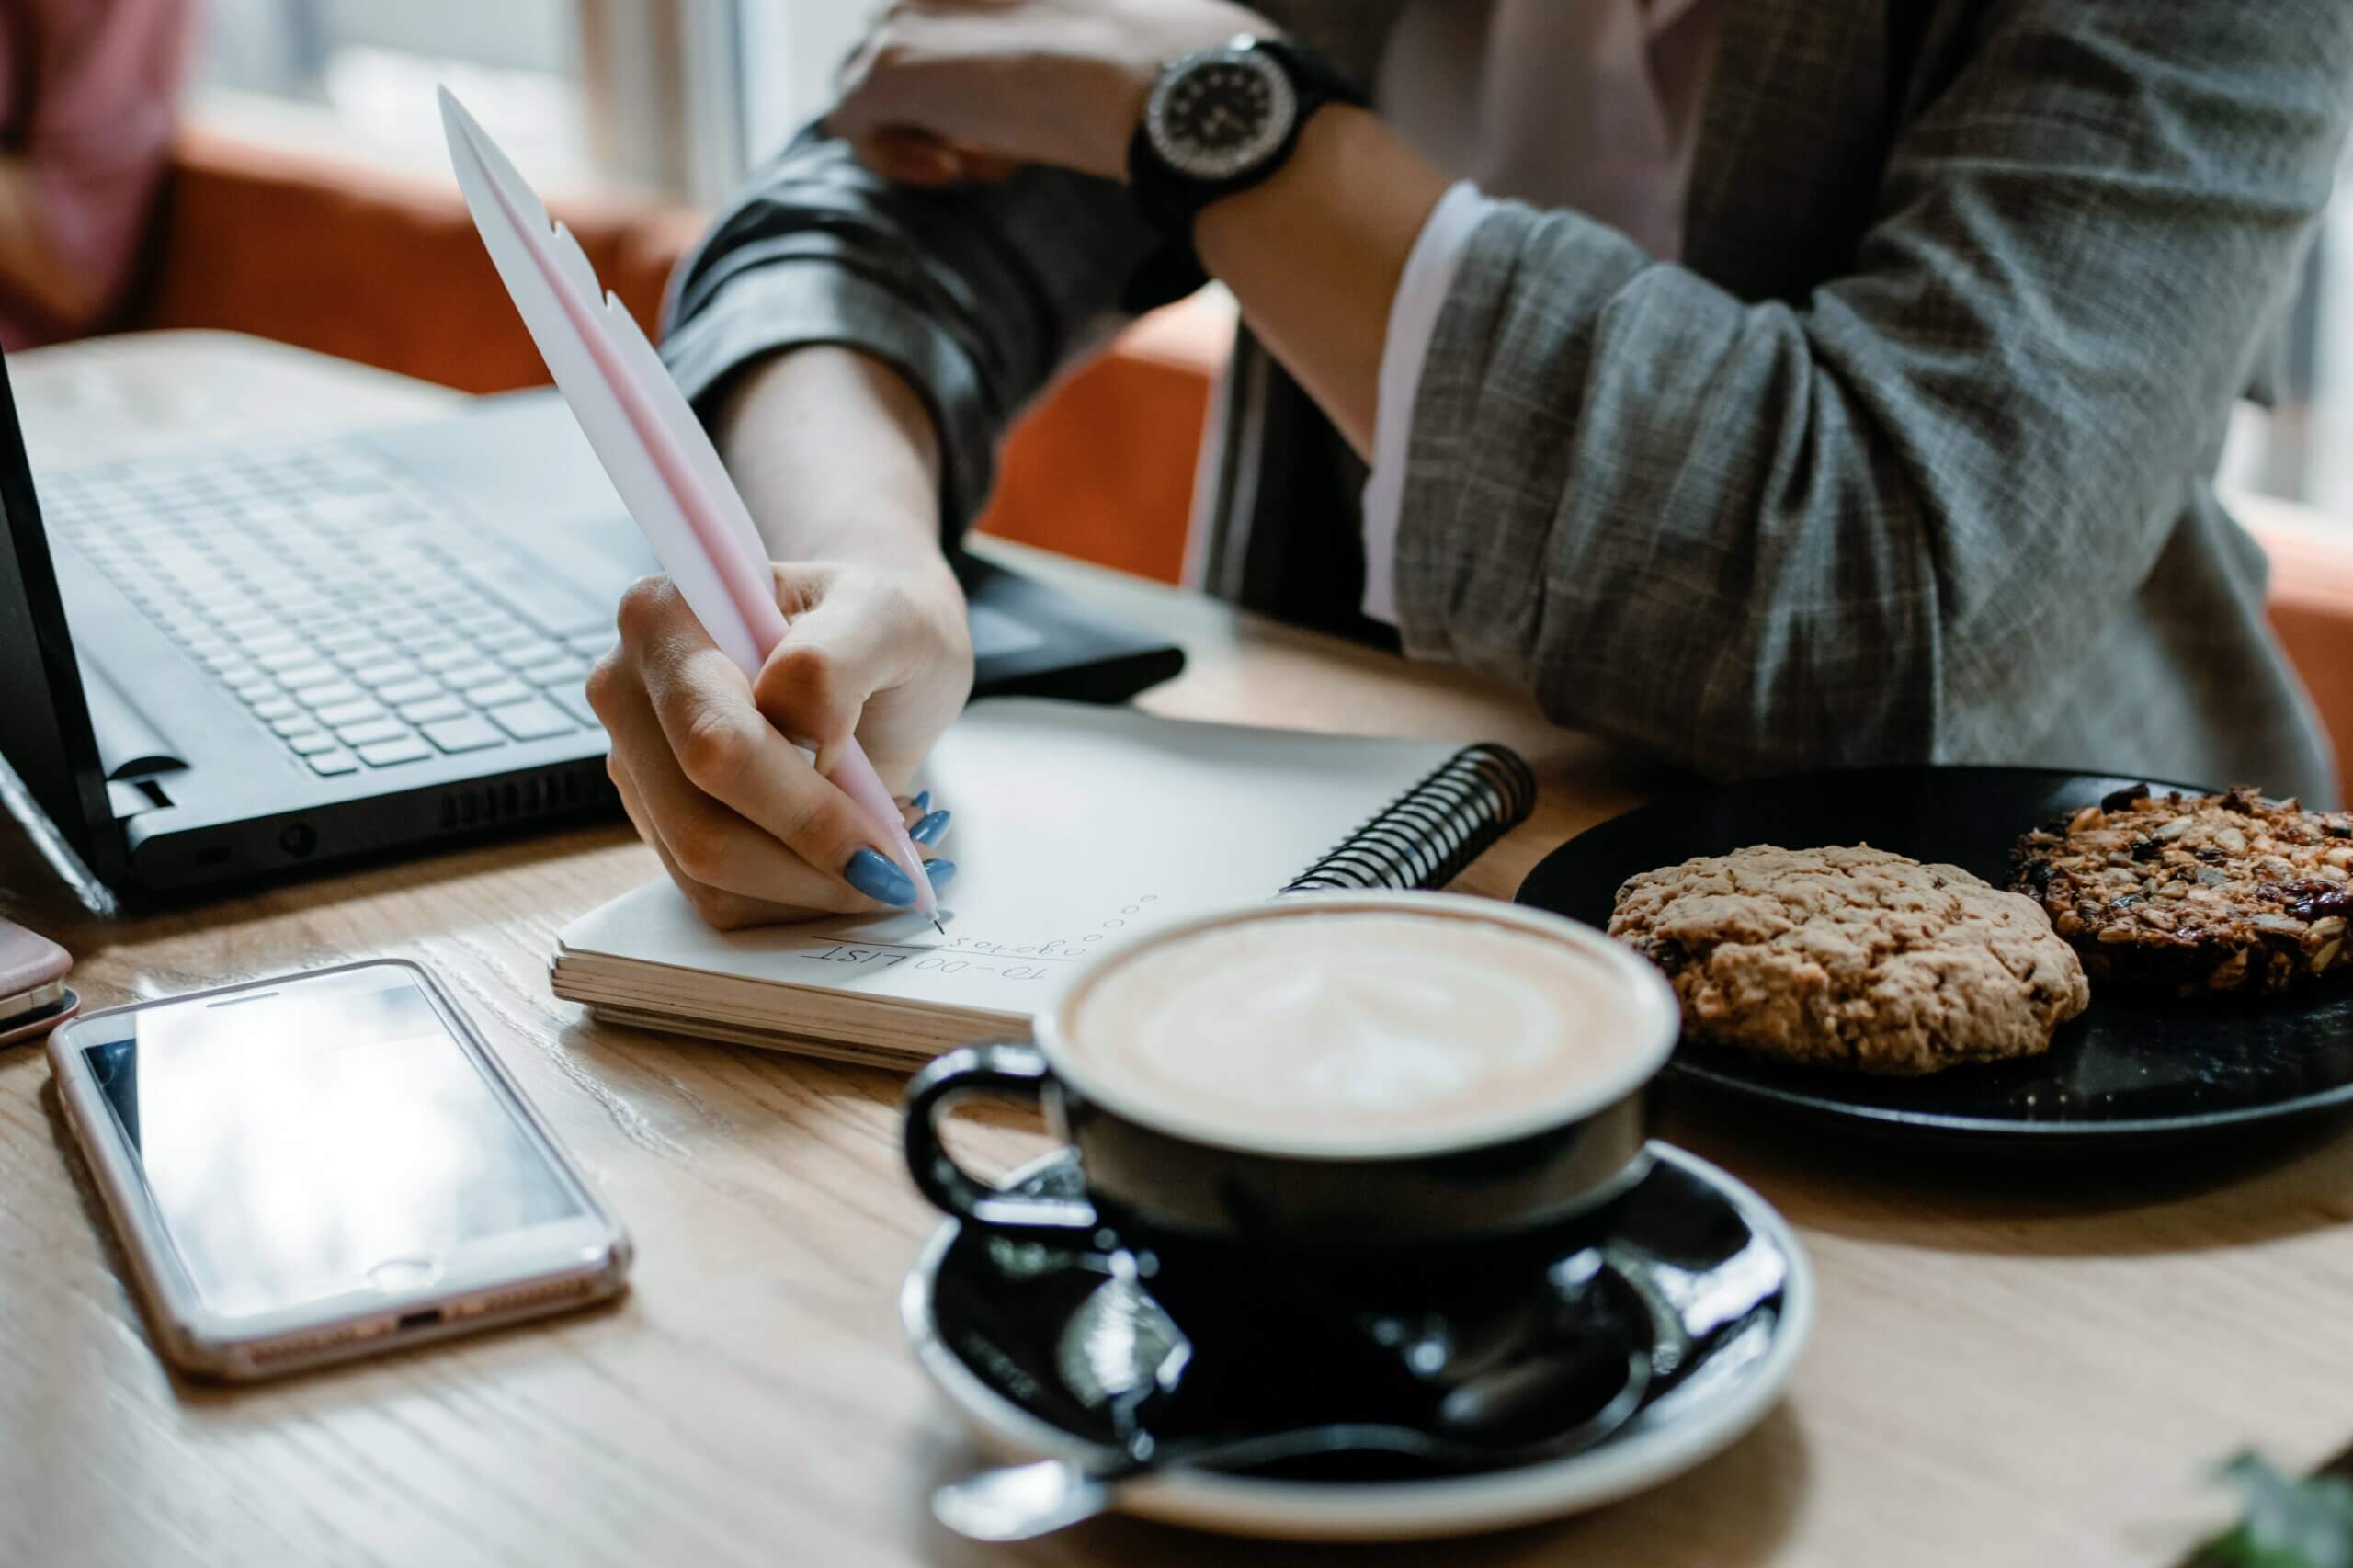 Mulher branca sentada em uma mesa em frente a um notebook, com uma xícara de café, um cookie e seu celular, dá início ao seu questionário de pesquisa em um caderno de anotações